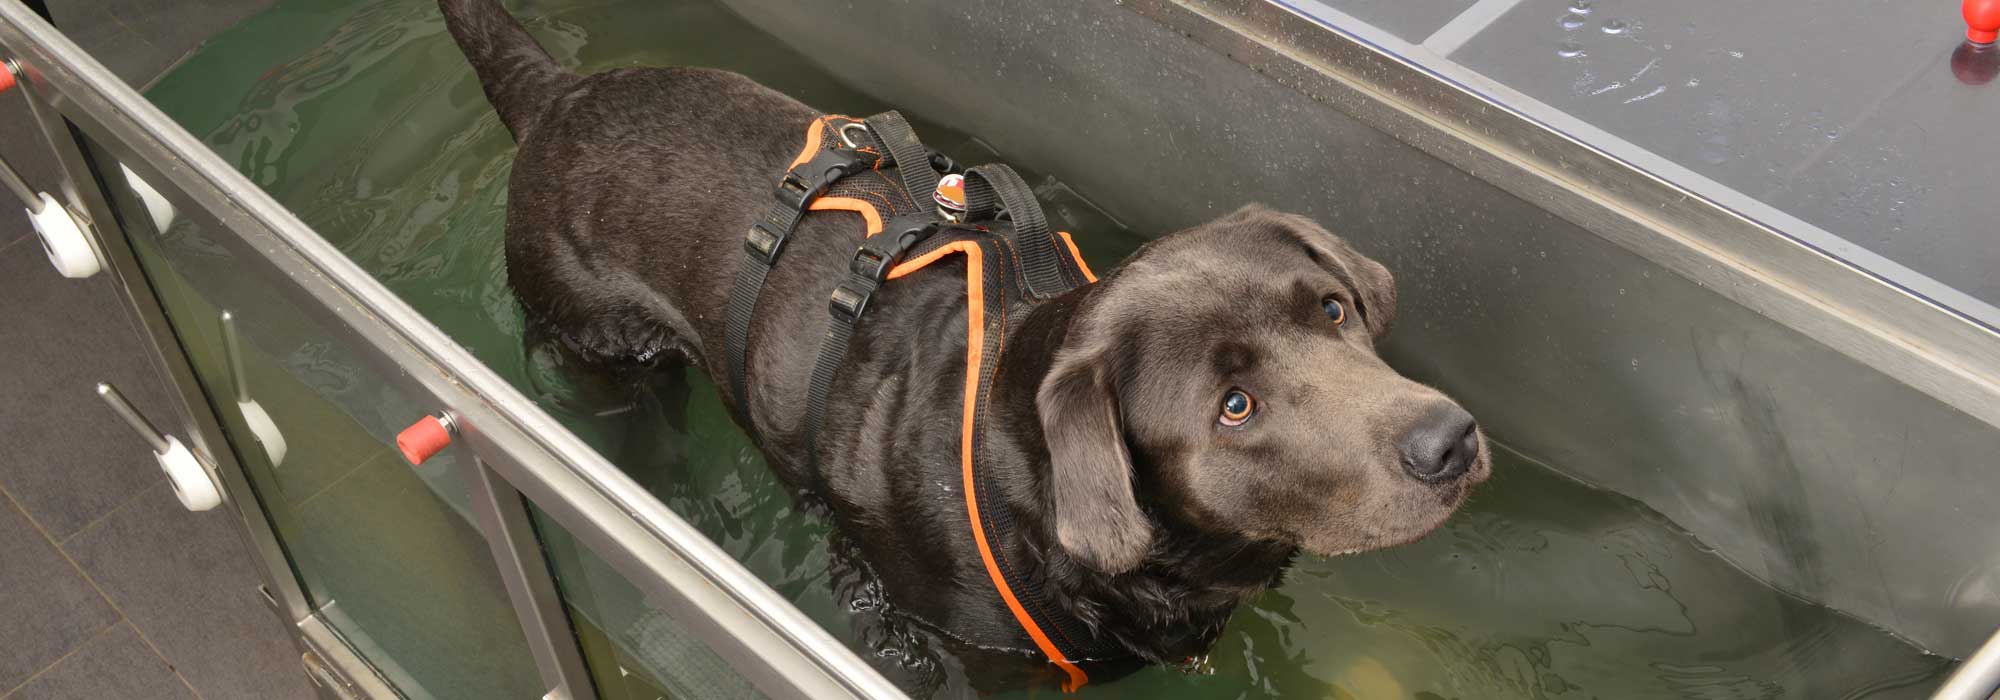 Unterwasserlaufband für Hunde - Tierarztklinik Dr. Stadler